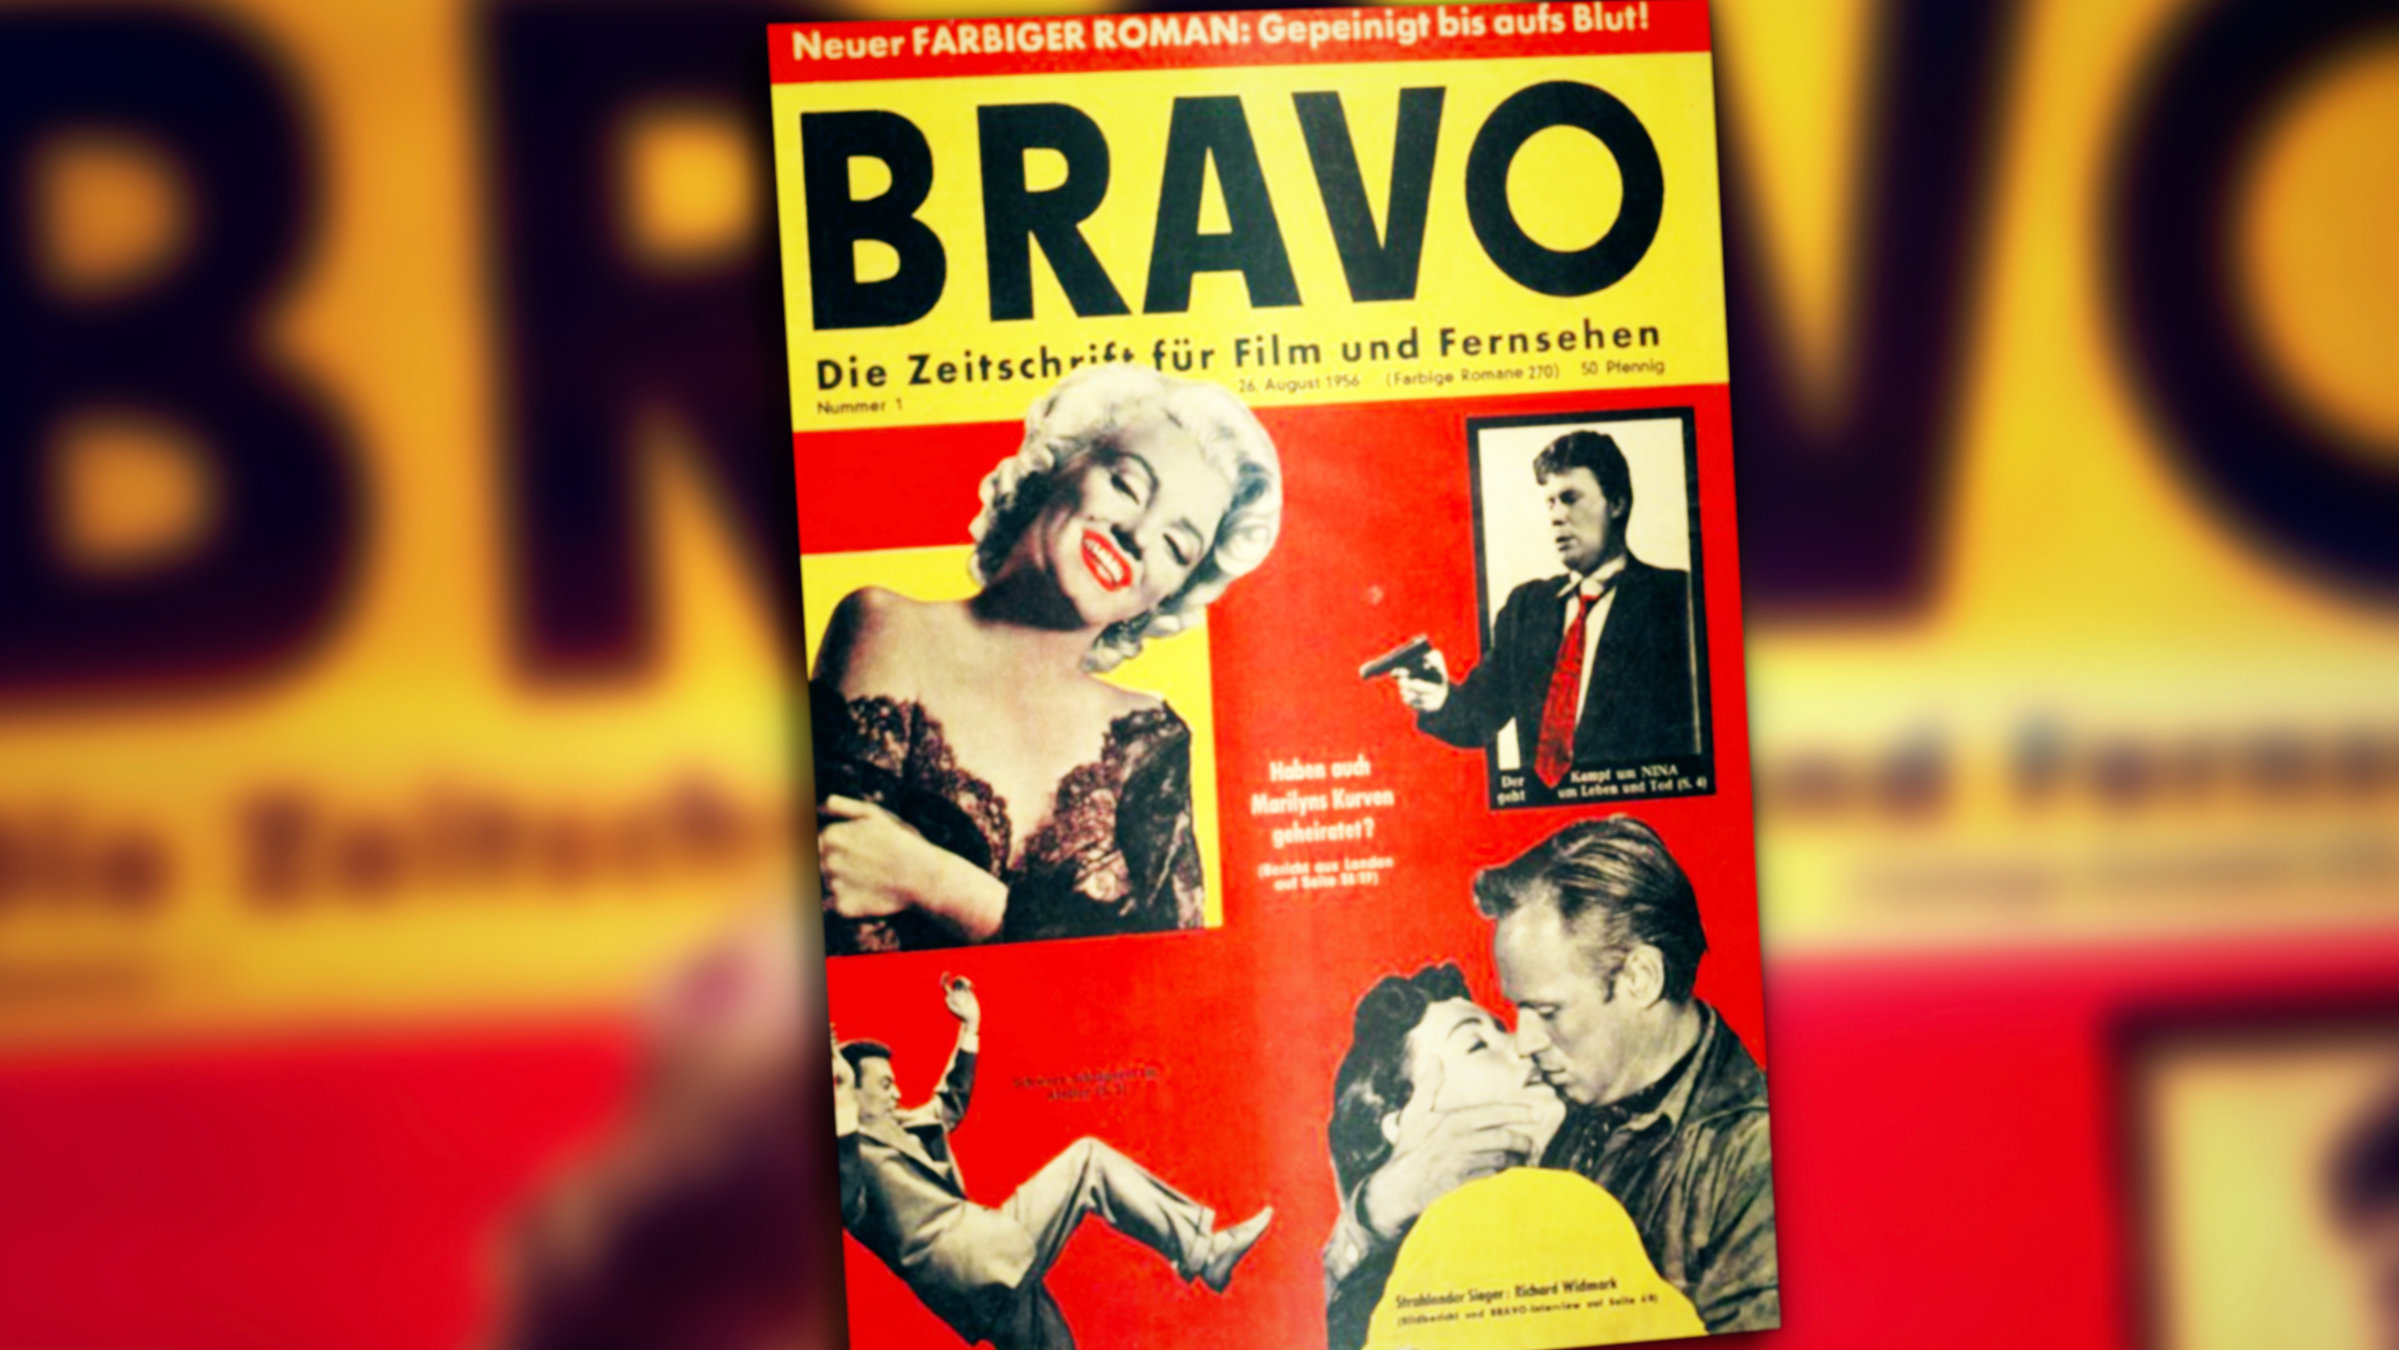 "ZDFzeit: 65 Jahre "Bravo" - Liebe, Stars und Dr. Sommer": Vor einer verschwommenen schwarzen Schrift im Hintergrund sieht man ein schwarz-gelb-rotes Titelblatt mit "Bravo-Schrift" und vier Filmstars, darunter Marilyn Monroe.